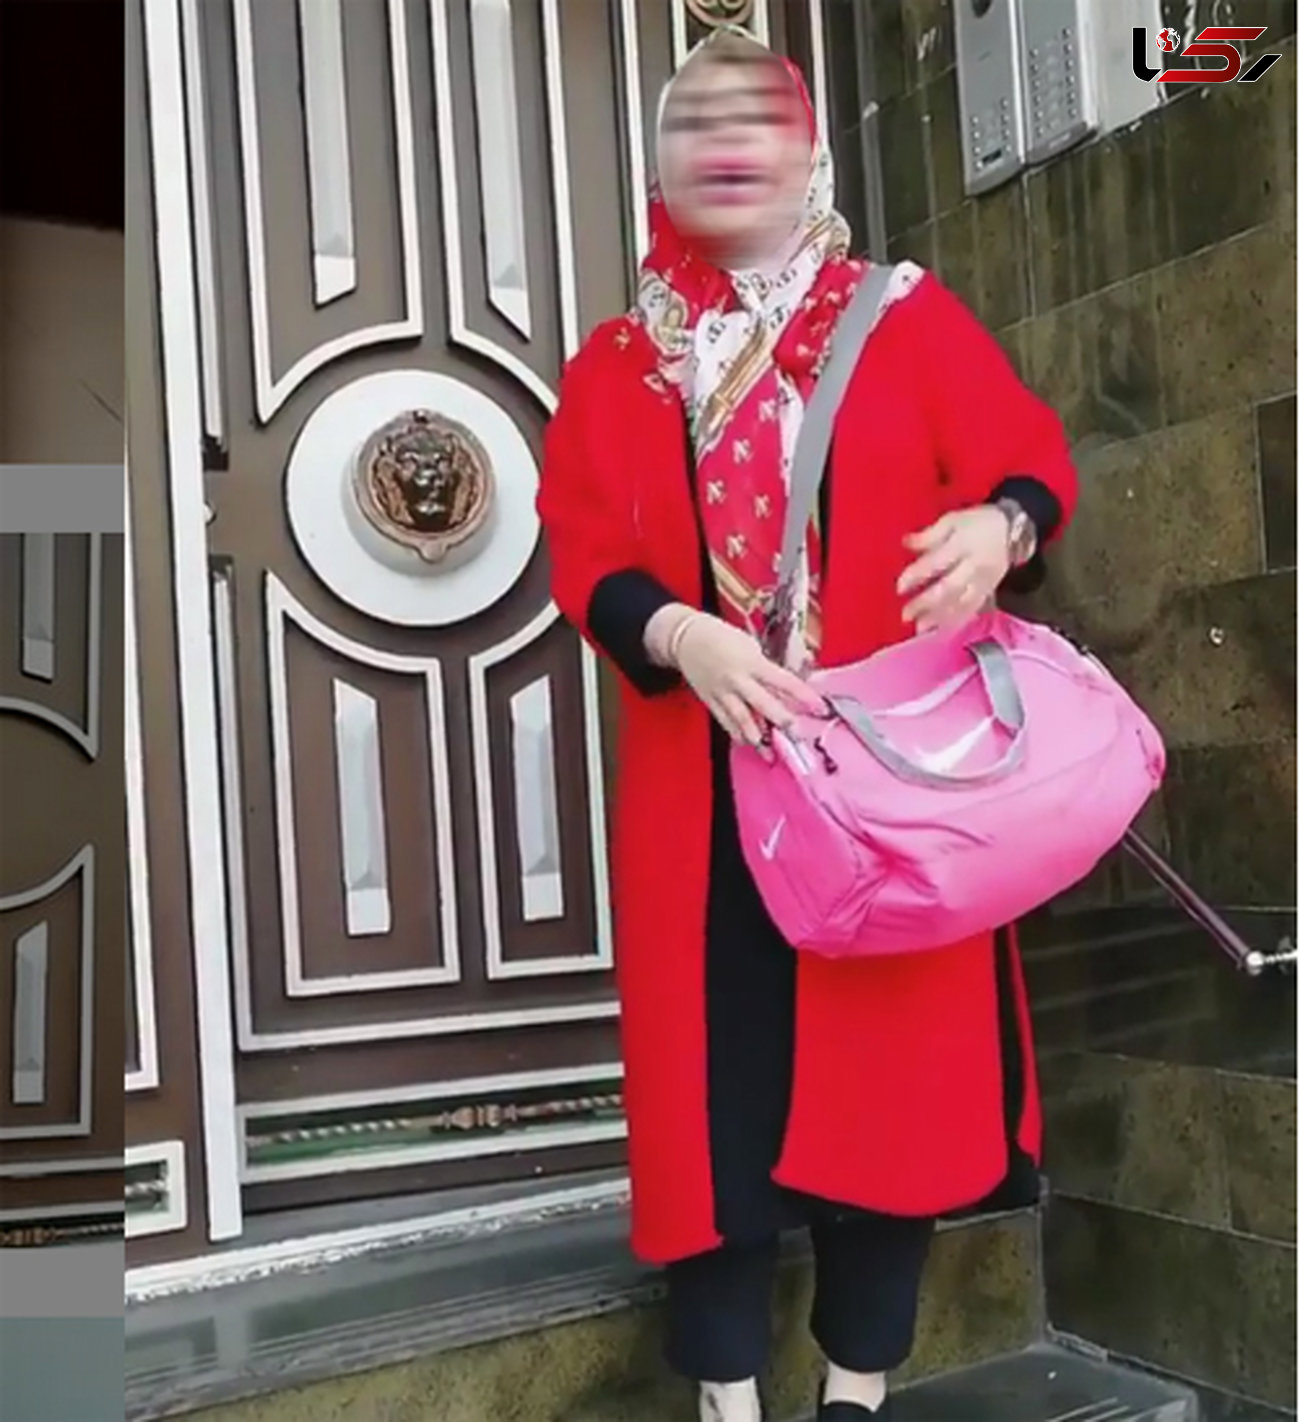 شاخ های اینستاگرام با حجاب شدند+عکس
